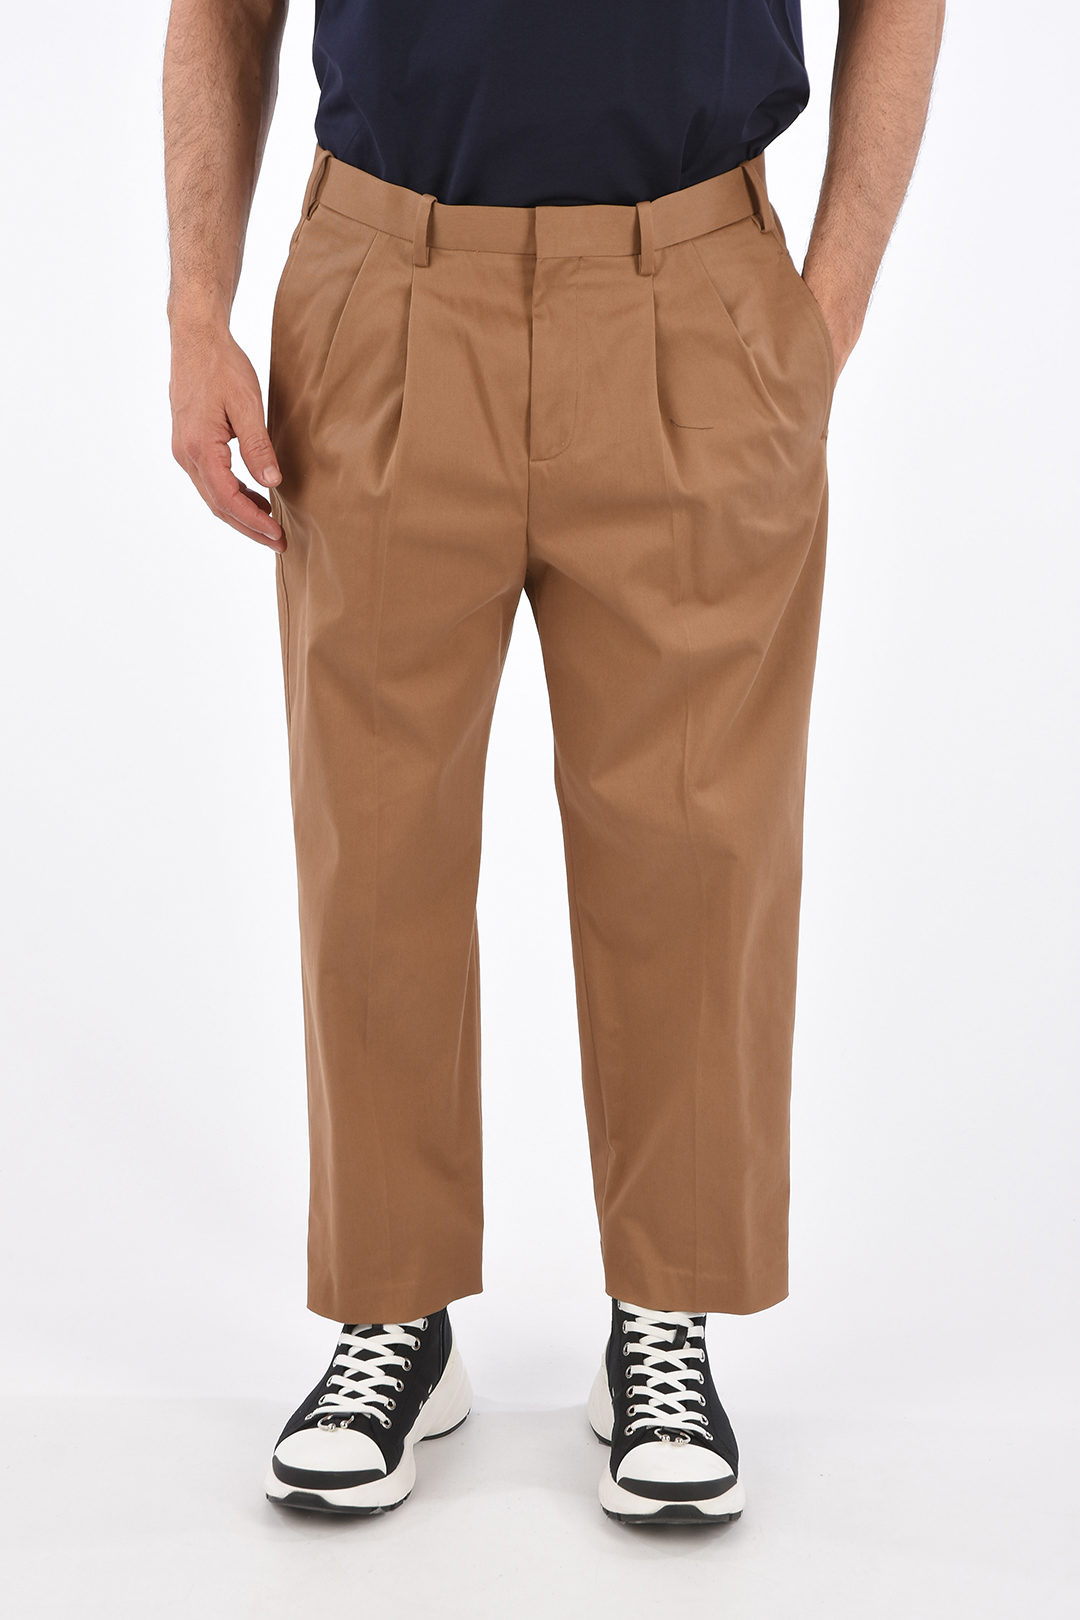 Menswear  Wide Single Pleat Pants, Dark Brown